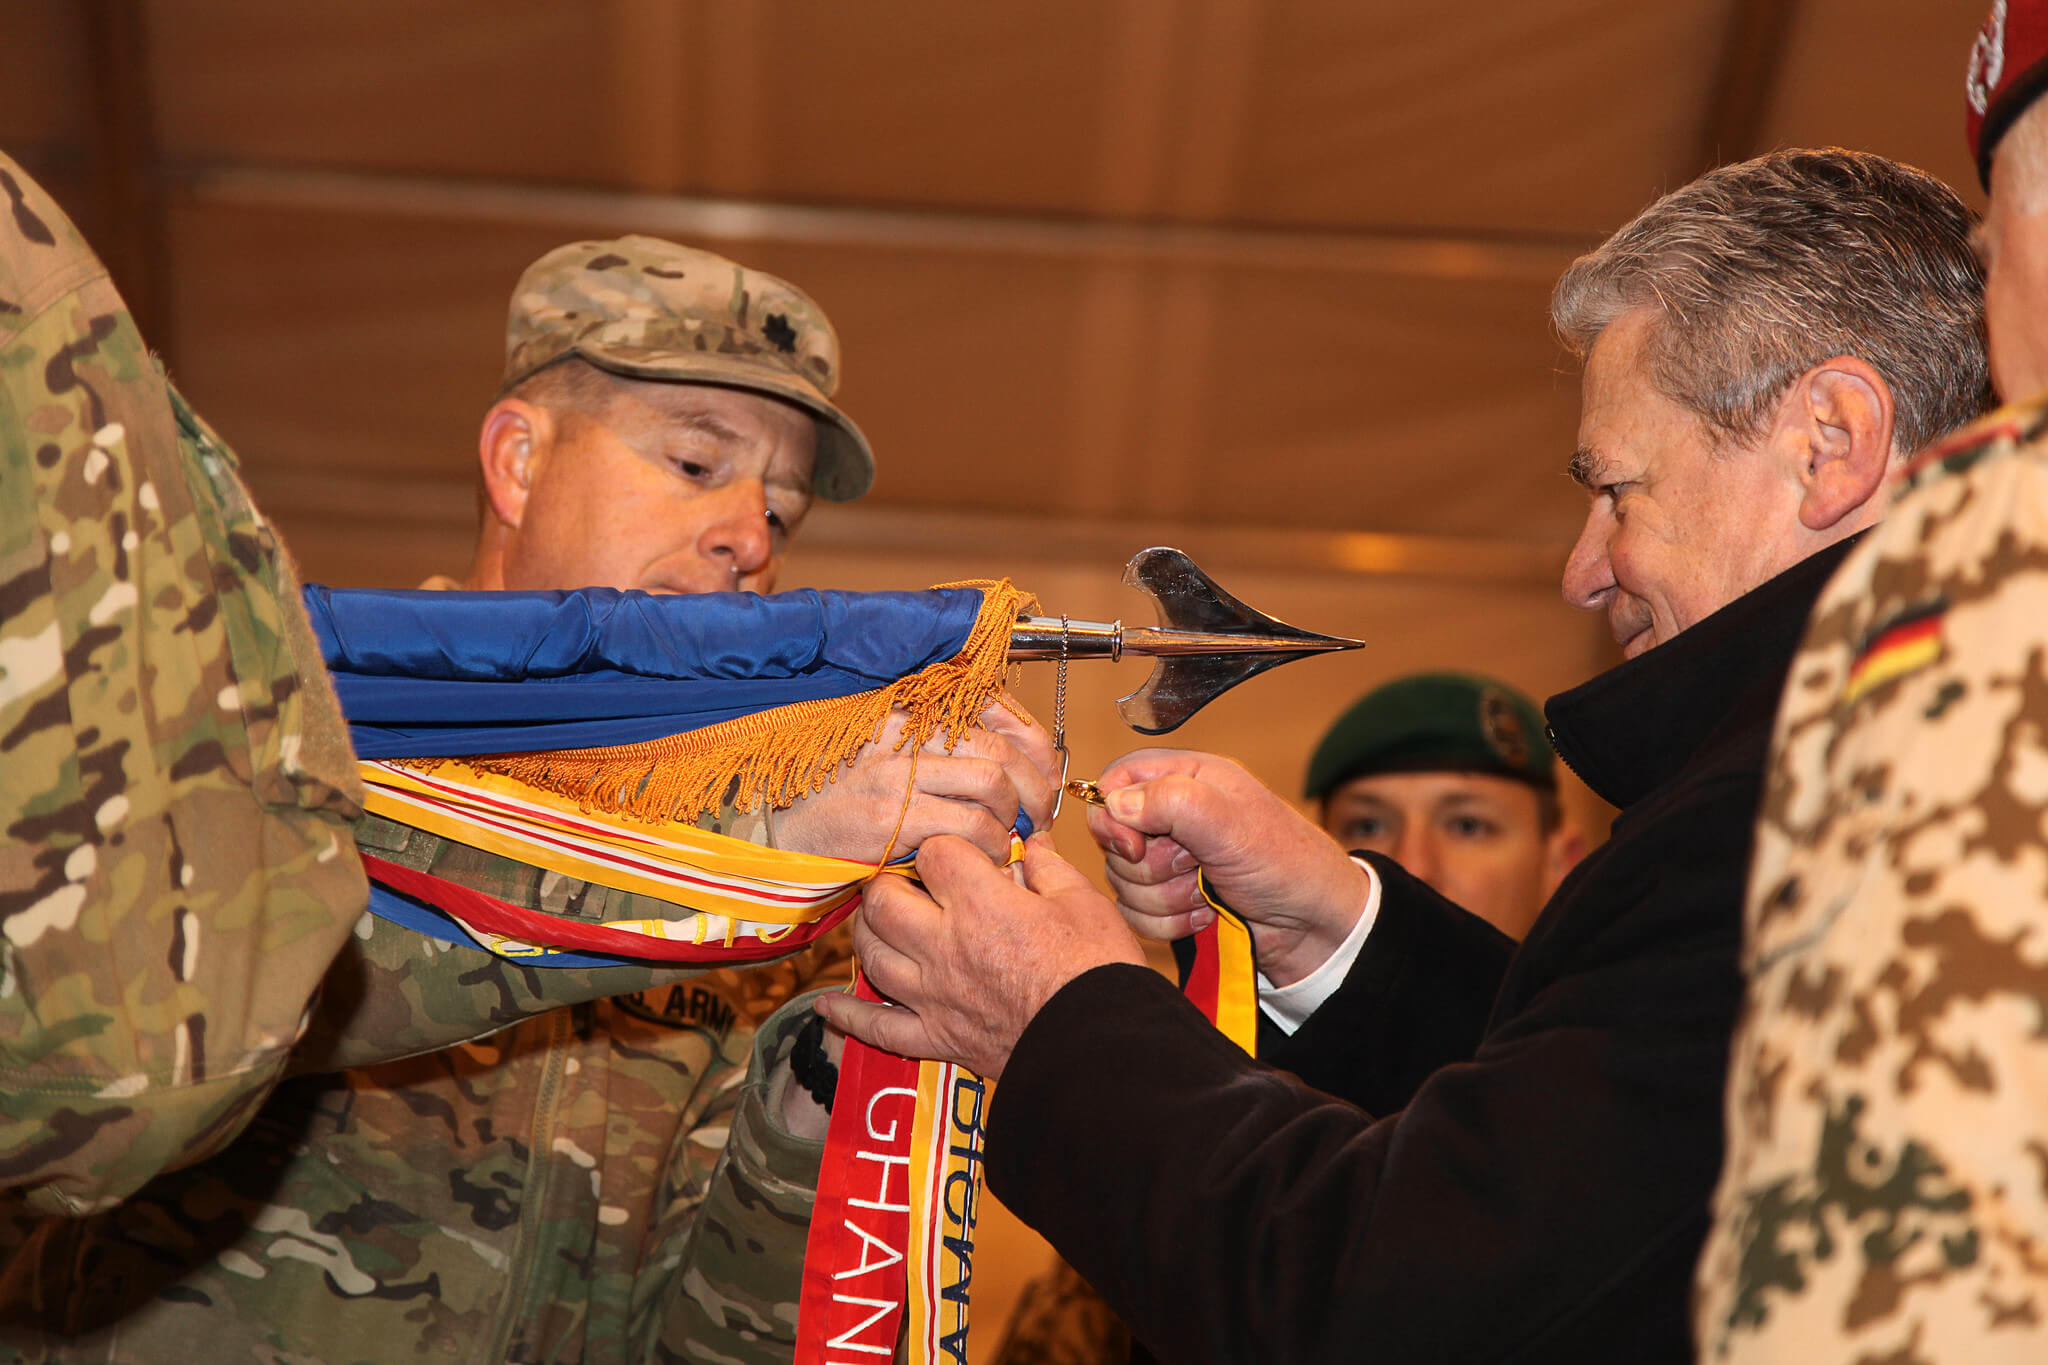 Pekelder-foto-De Duitse president Joachim Gauck in 2008 tijdens een ceremonie met het Amerikaanse leger in Afghanistan - The US Army Flickr